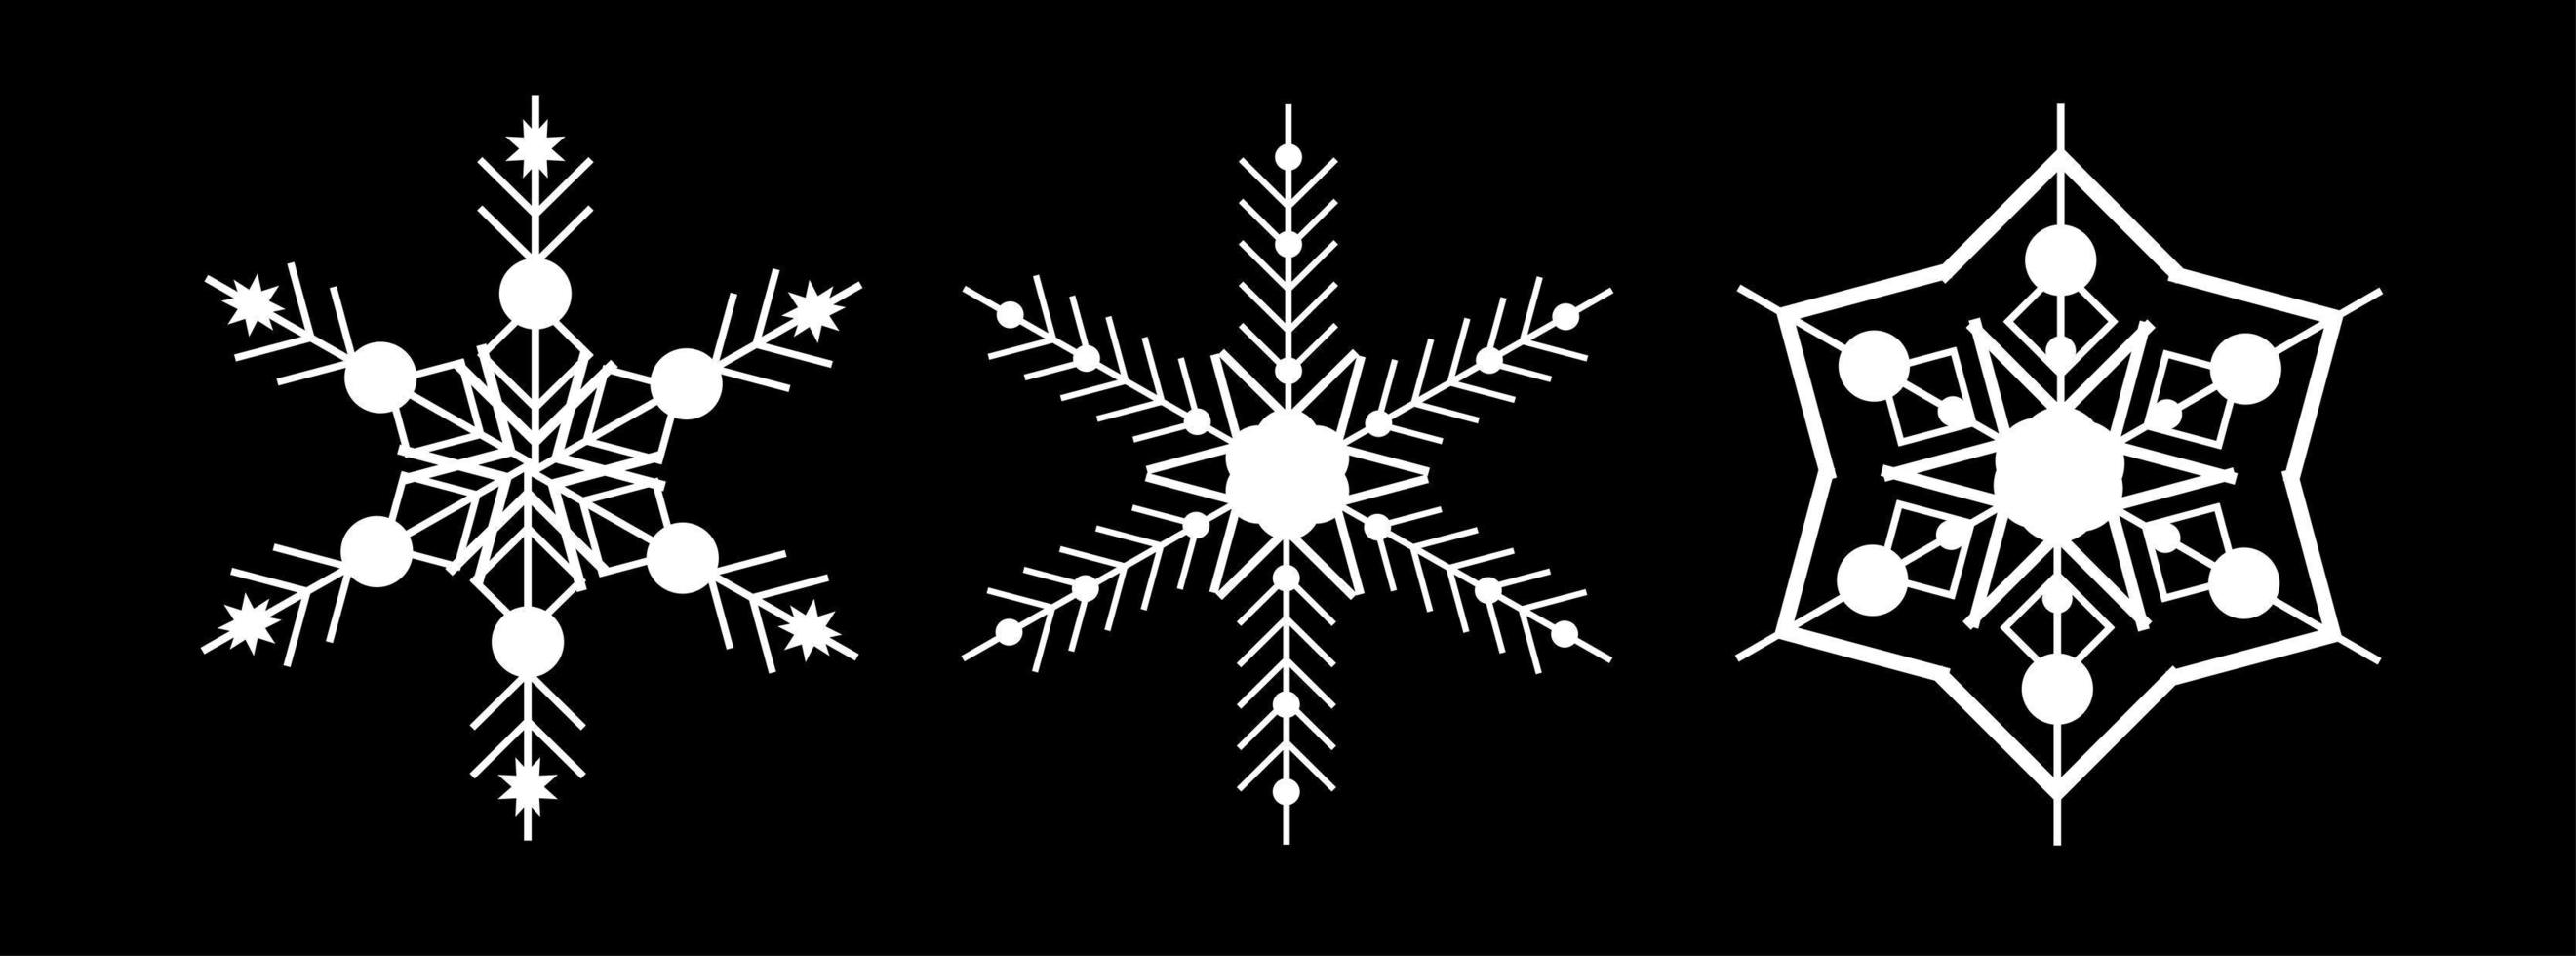 Establecer copo de nieve blanco sobre un fondo negro. decoración para navidad y año nuevo diseño de tarjetas, banners, sitios web, iconos. elegante ilustración lineal de vectores geométricos.